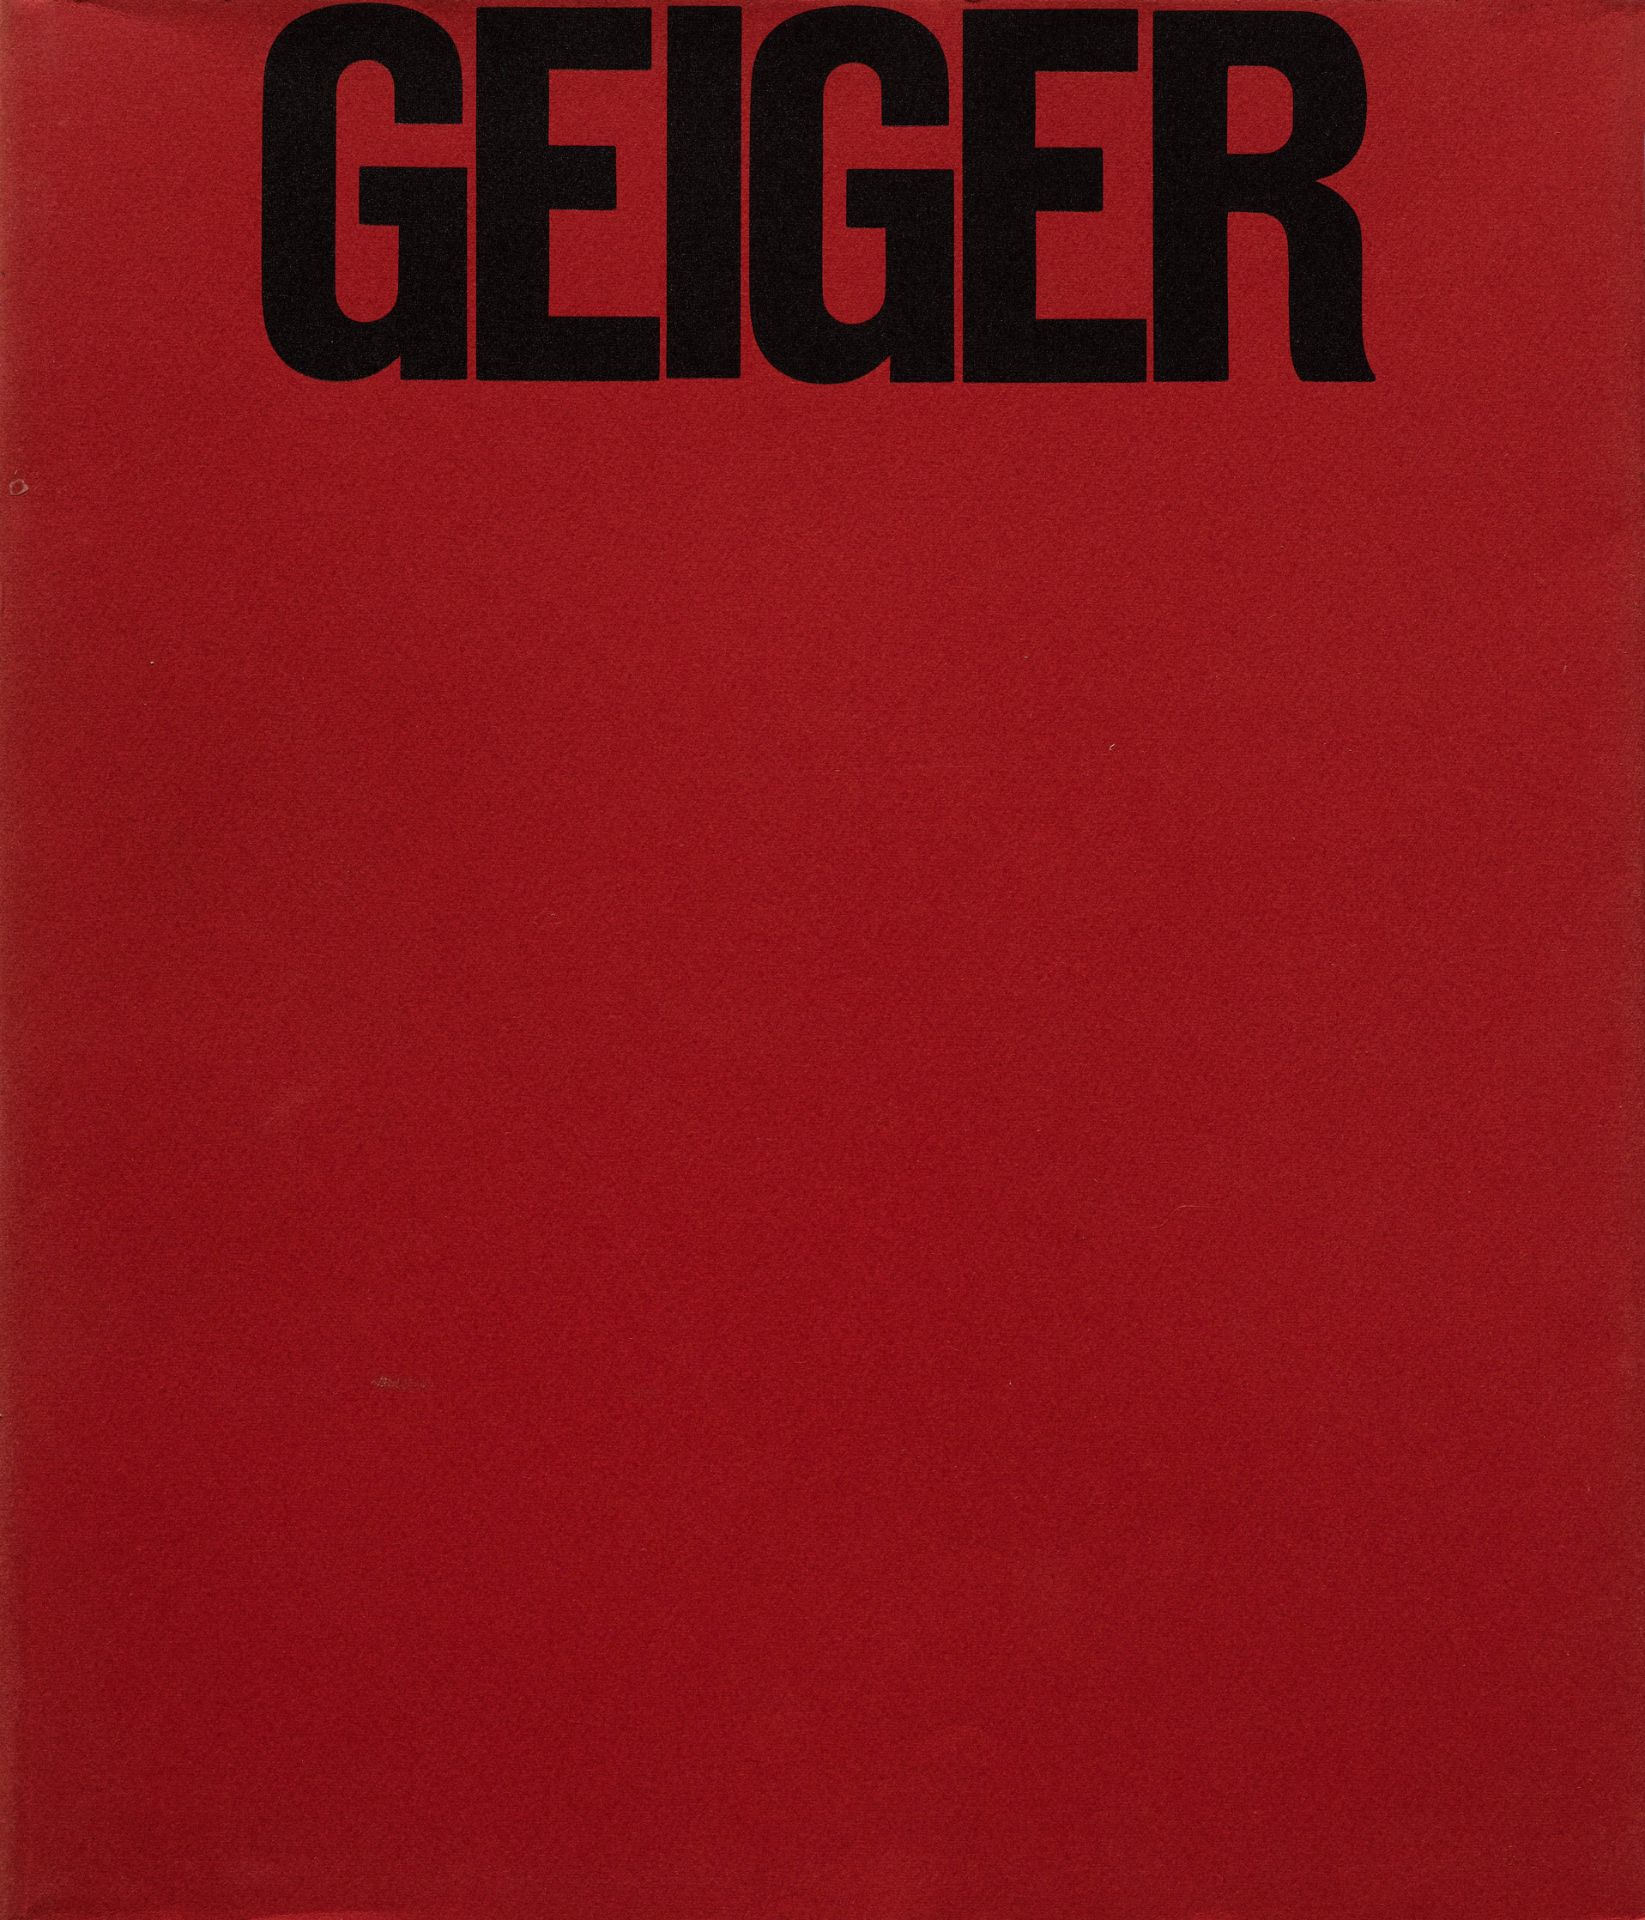 Geiger, Rupprecht.Zurückgehn. Weitergehn. Fortgehn. Mit 19 (st. 20 davon 5 doppelblattgr.)